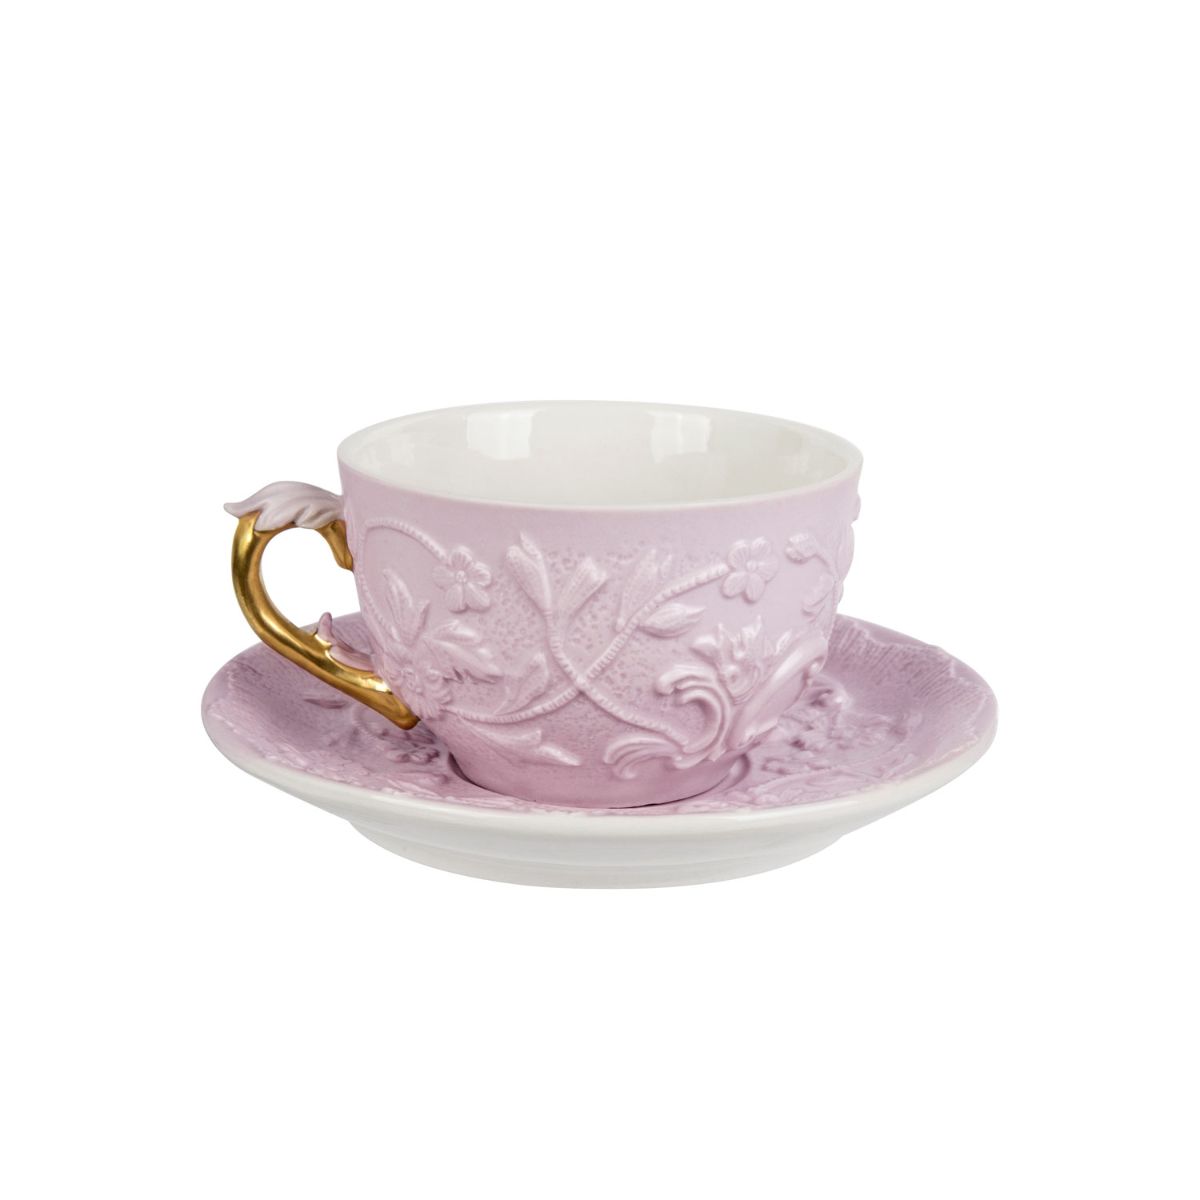 Taormina Pink & Gold Tea Cup & Saucer